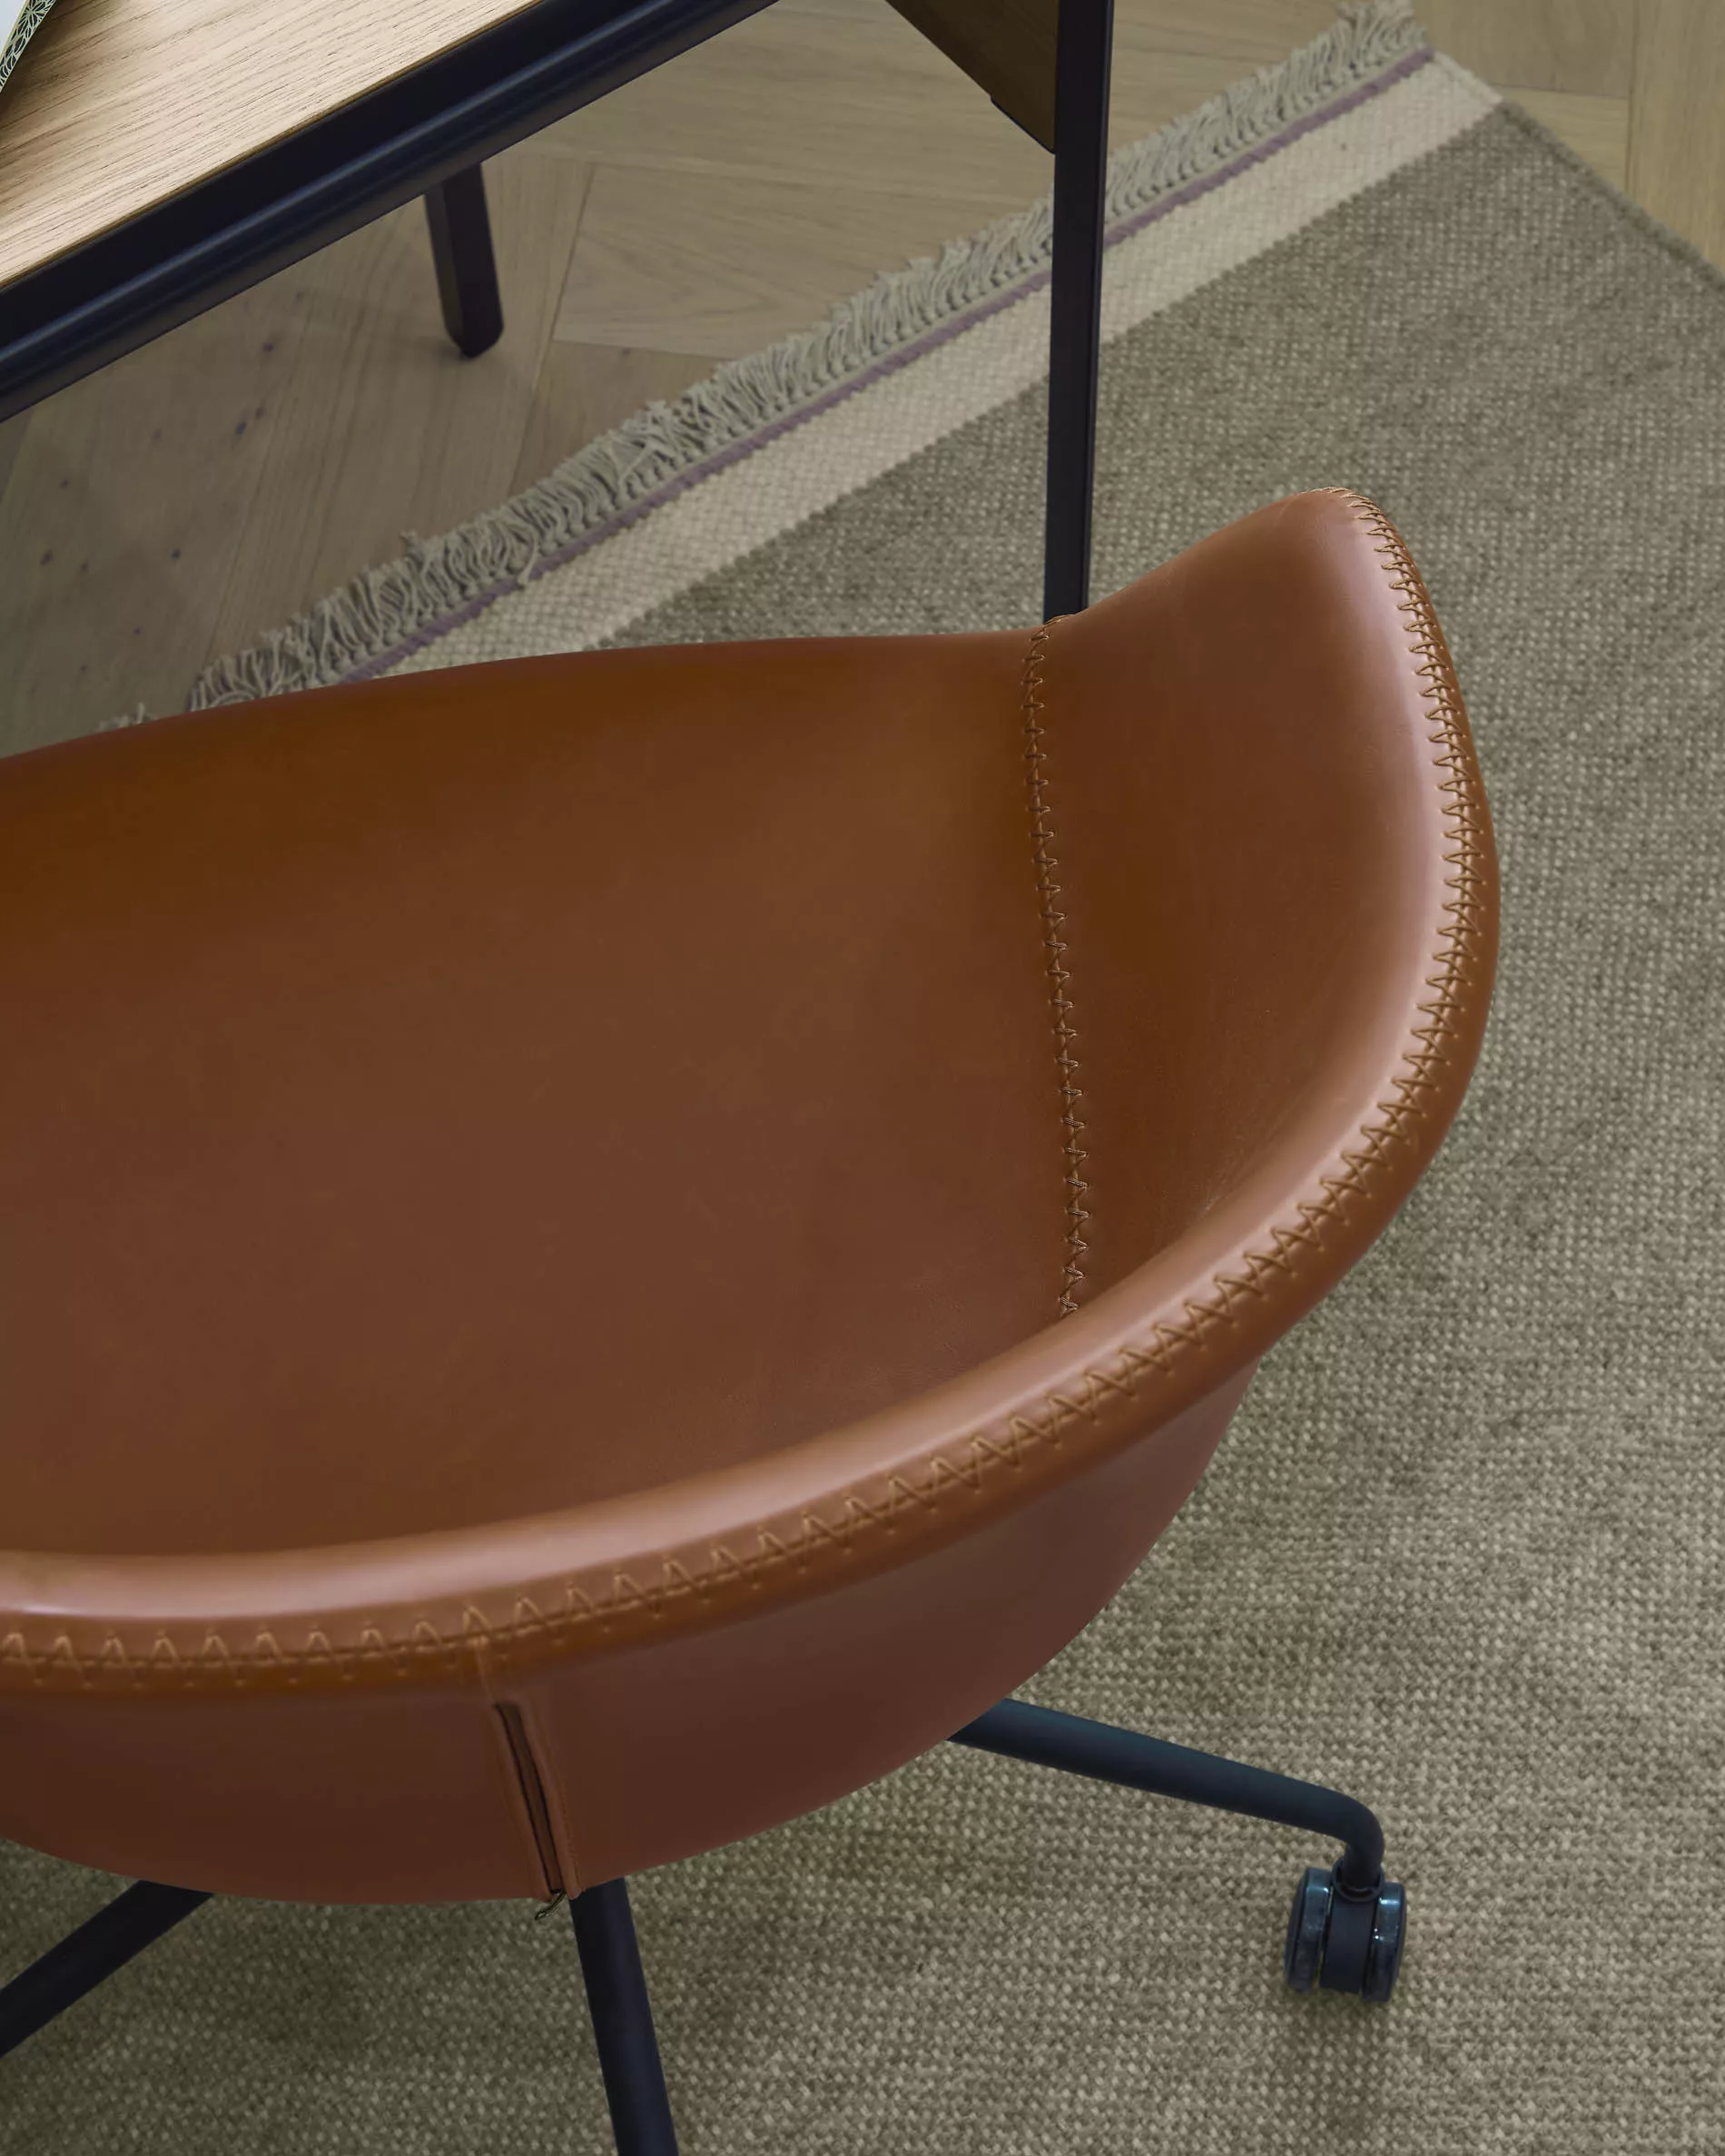 Офисное поворотное кресло La Forma Yvette коричневое